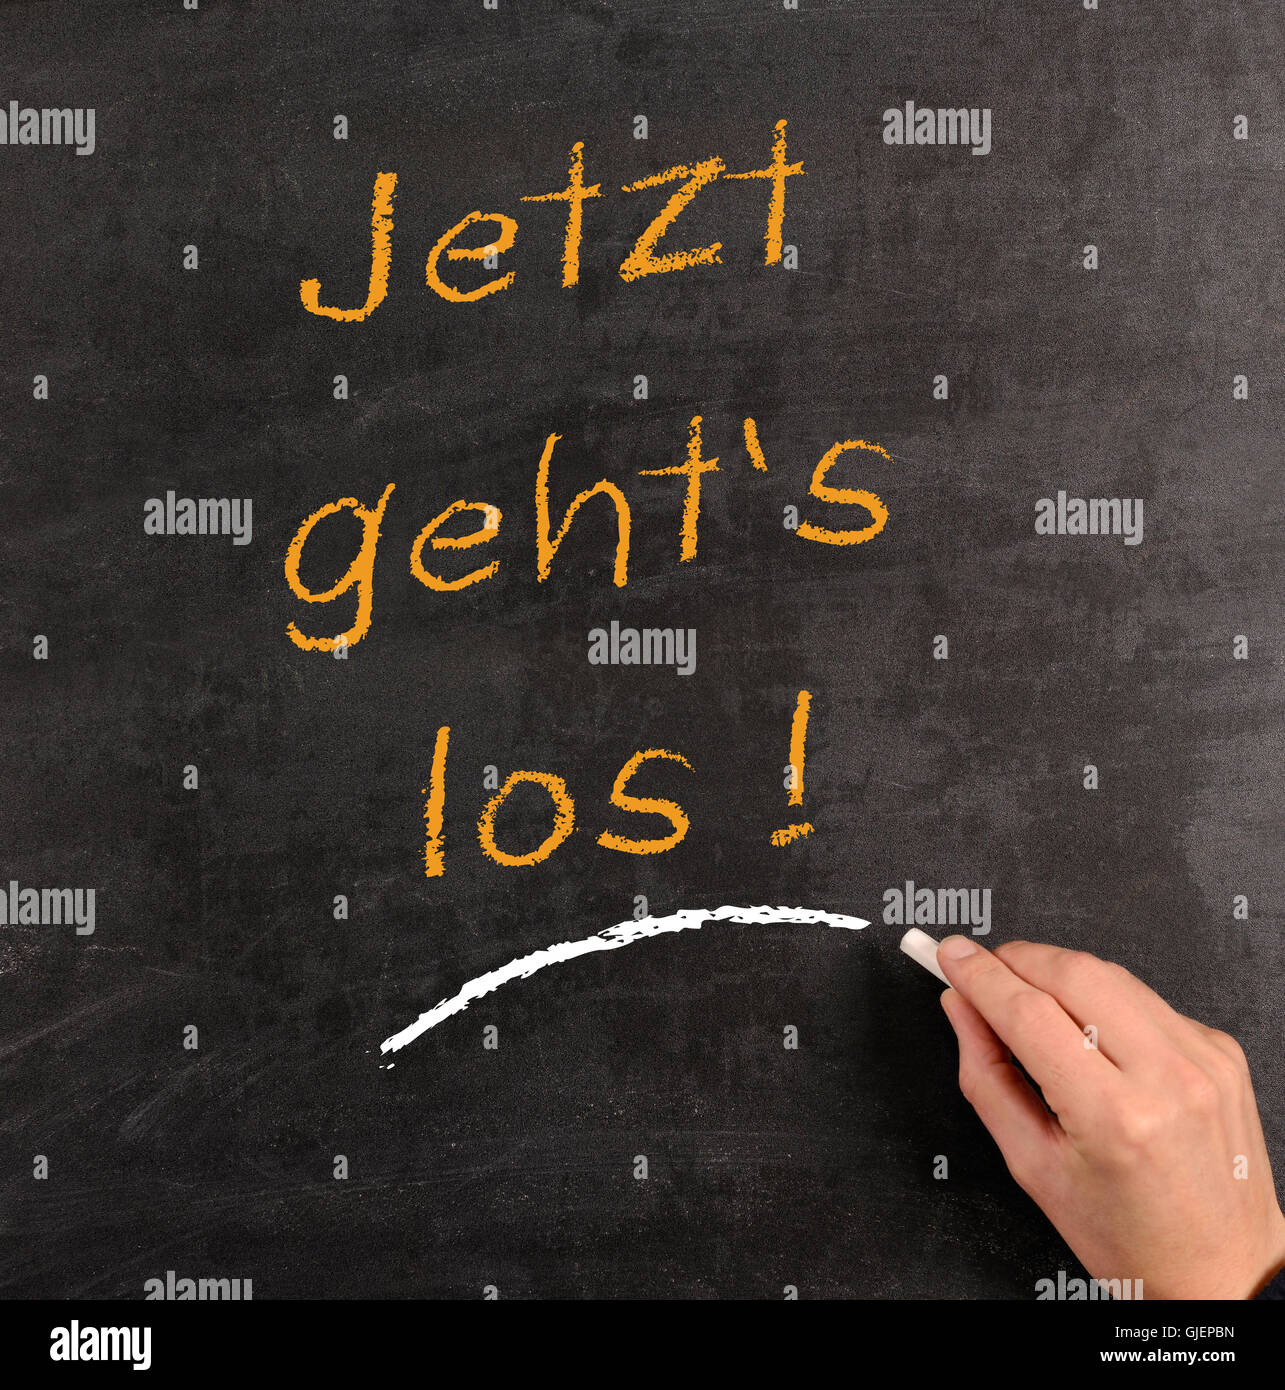 La escritura a mano con tiza en una pizarra las palabras en alemán 'Start ahora!". Foto de stock